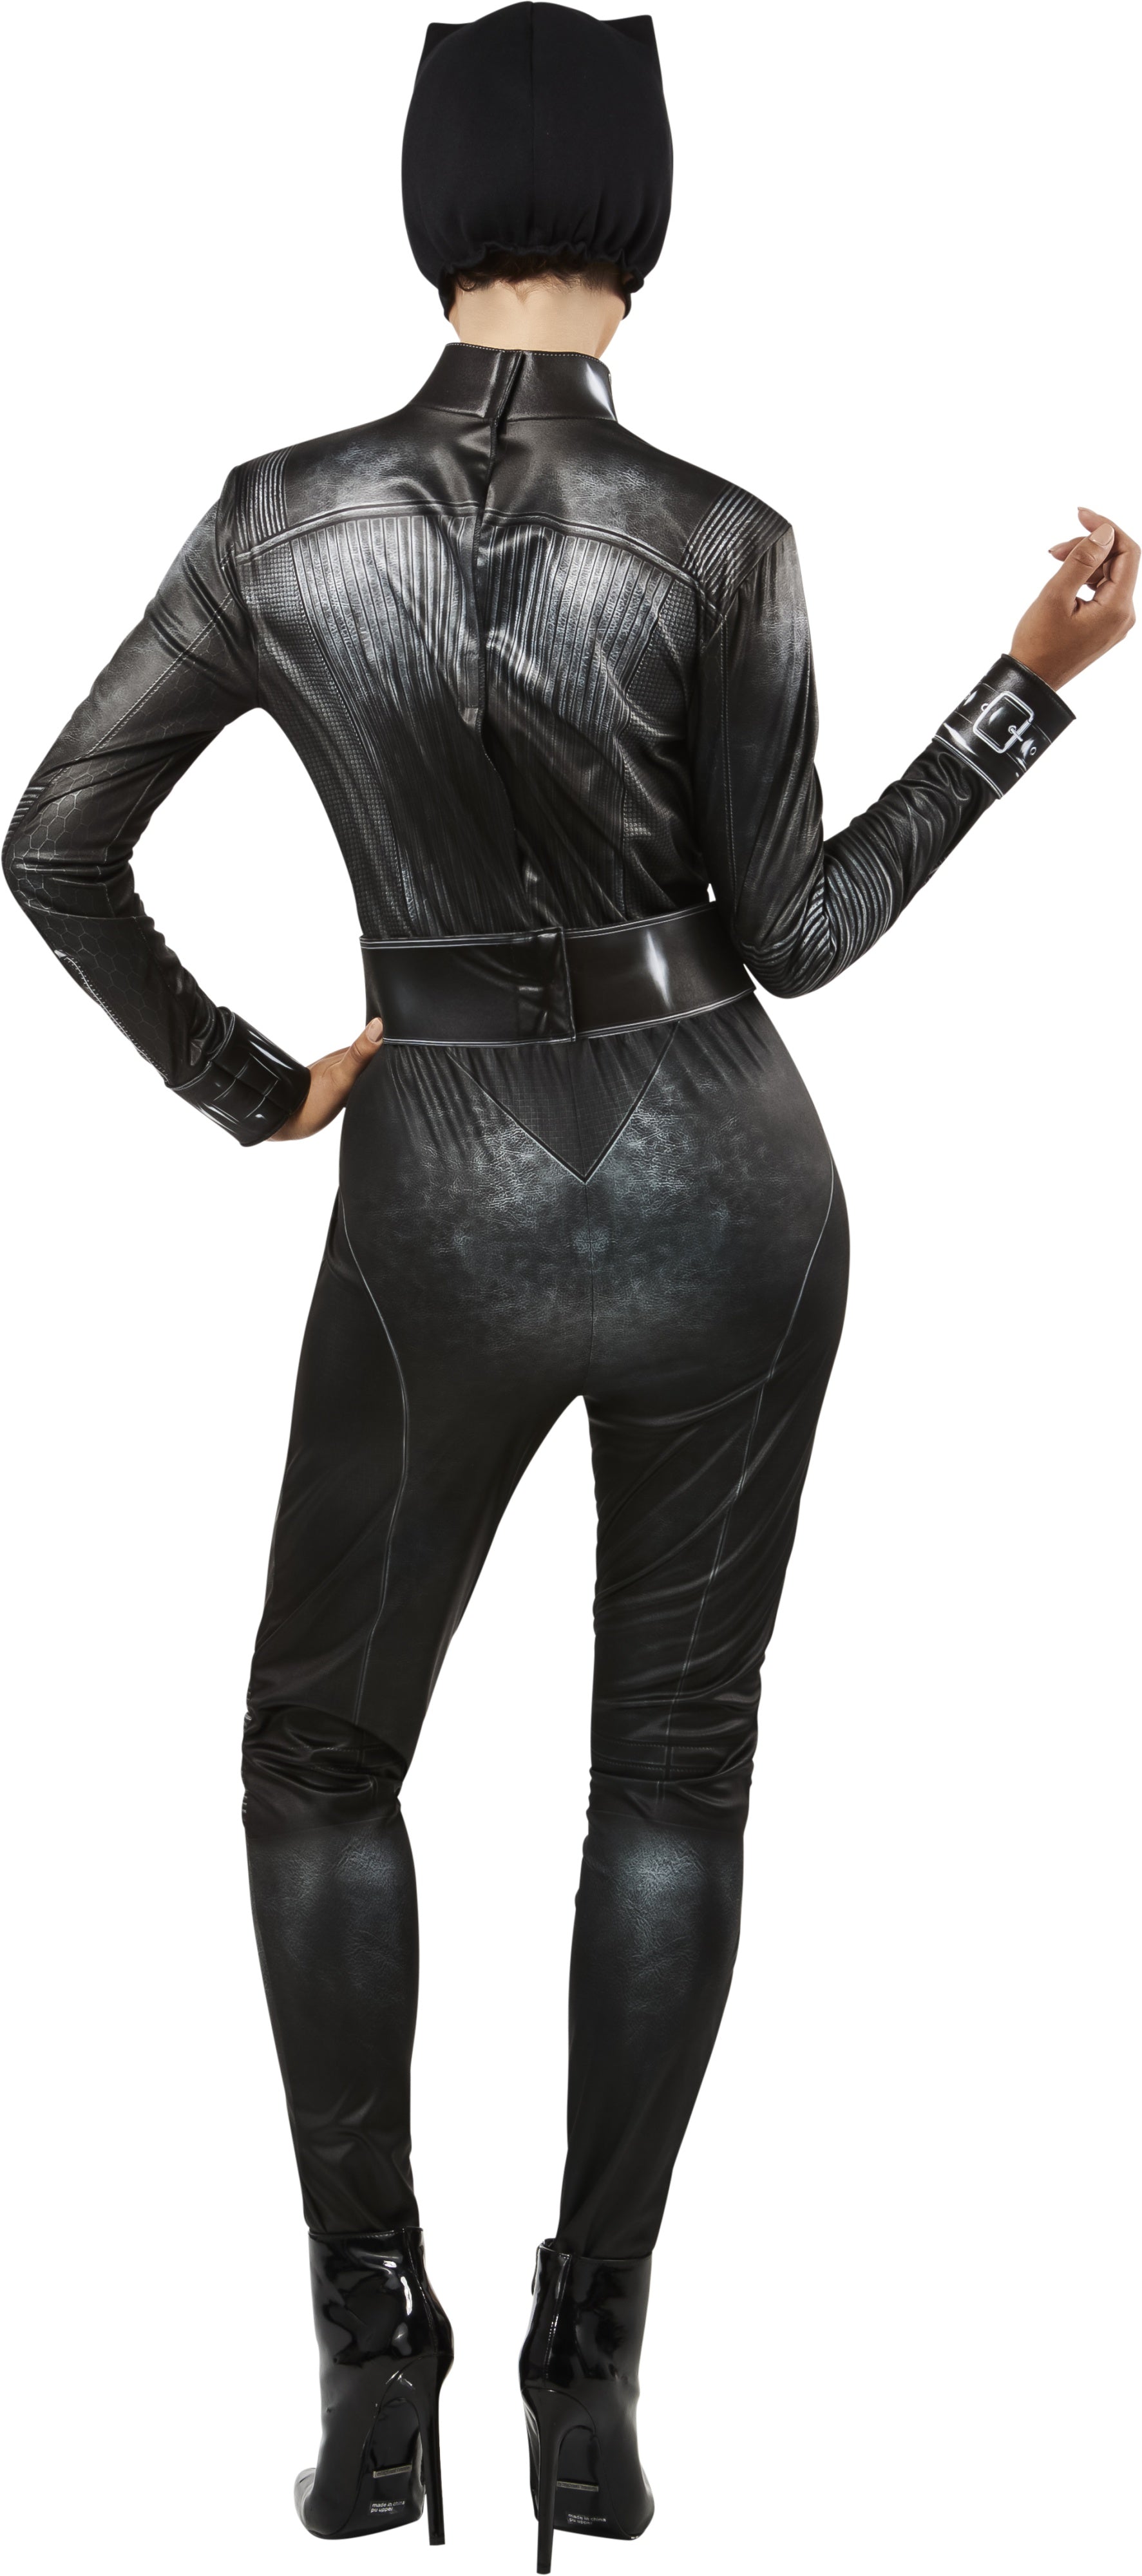 Selina Kyle Adult Costume